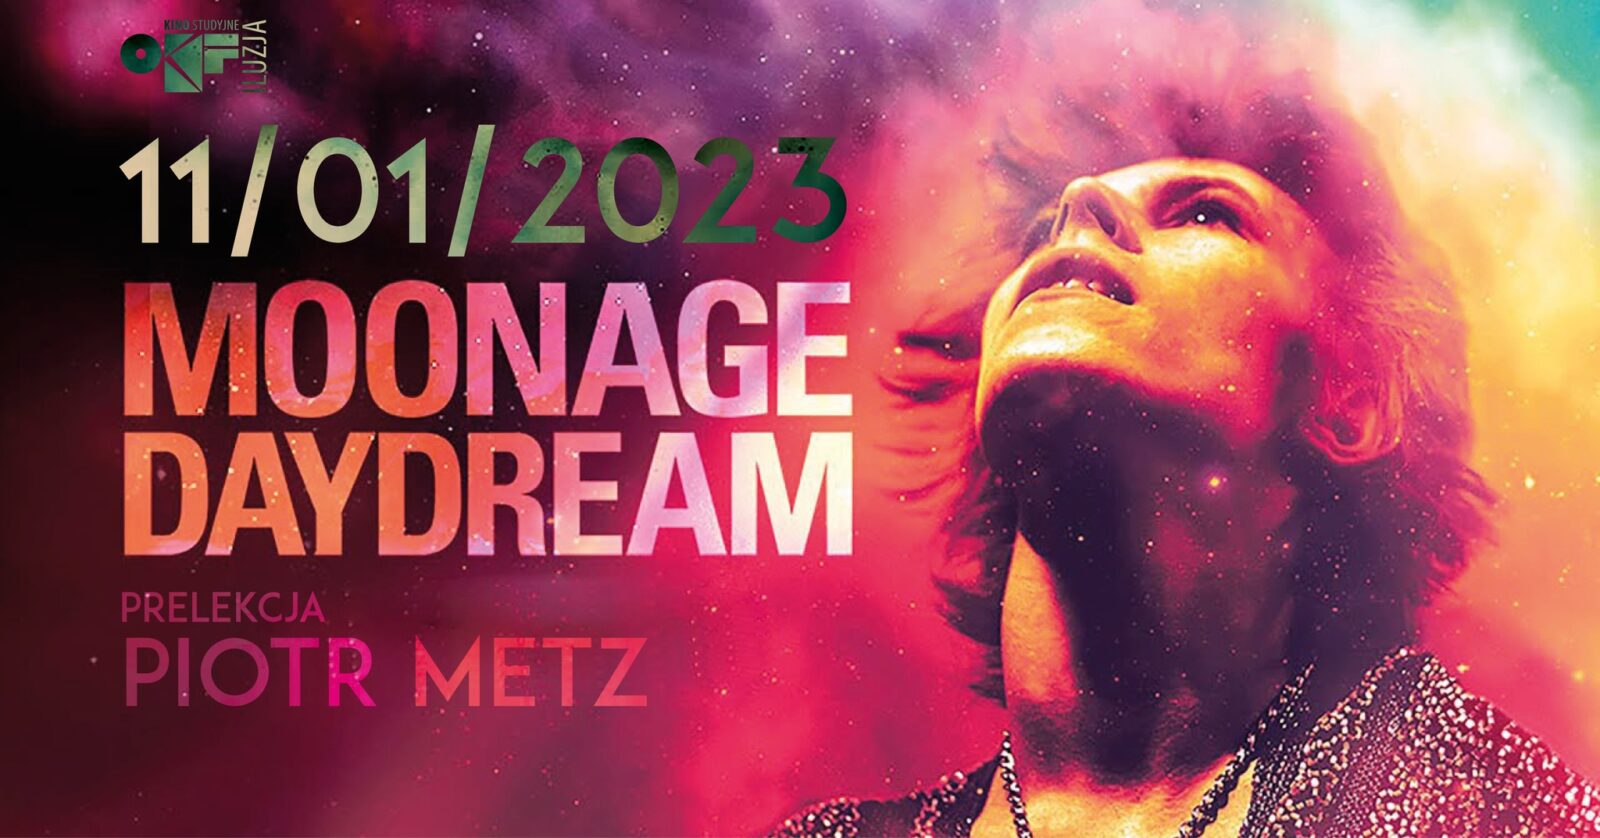 OKF. W Częstochowie odbędzie się pokaz specjalny filmu "Moonage Daydream" z udziałem Piotra Metza 3